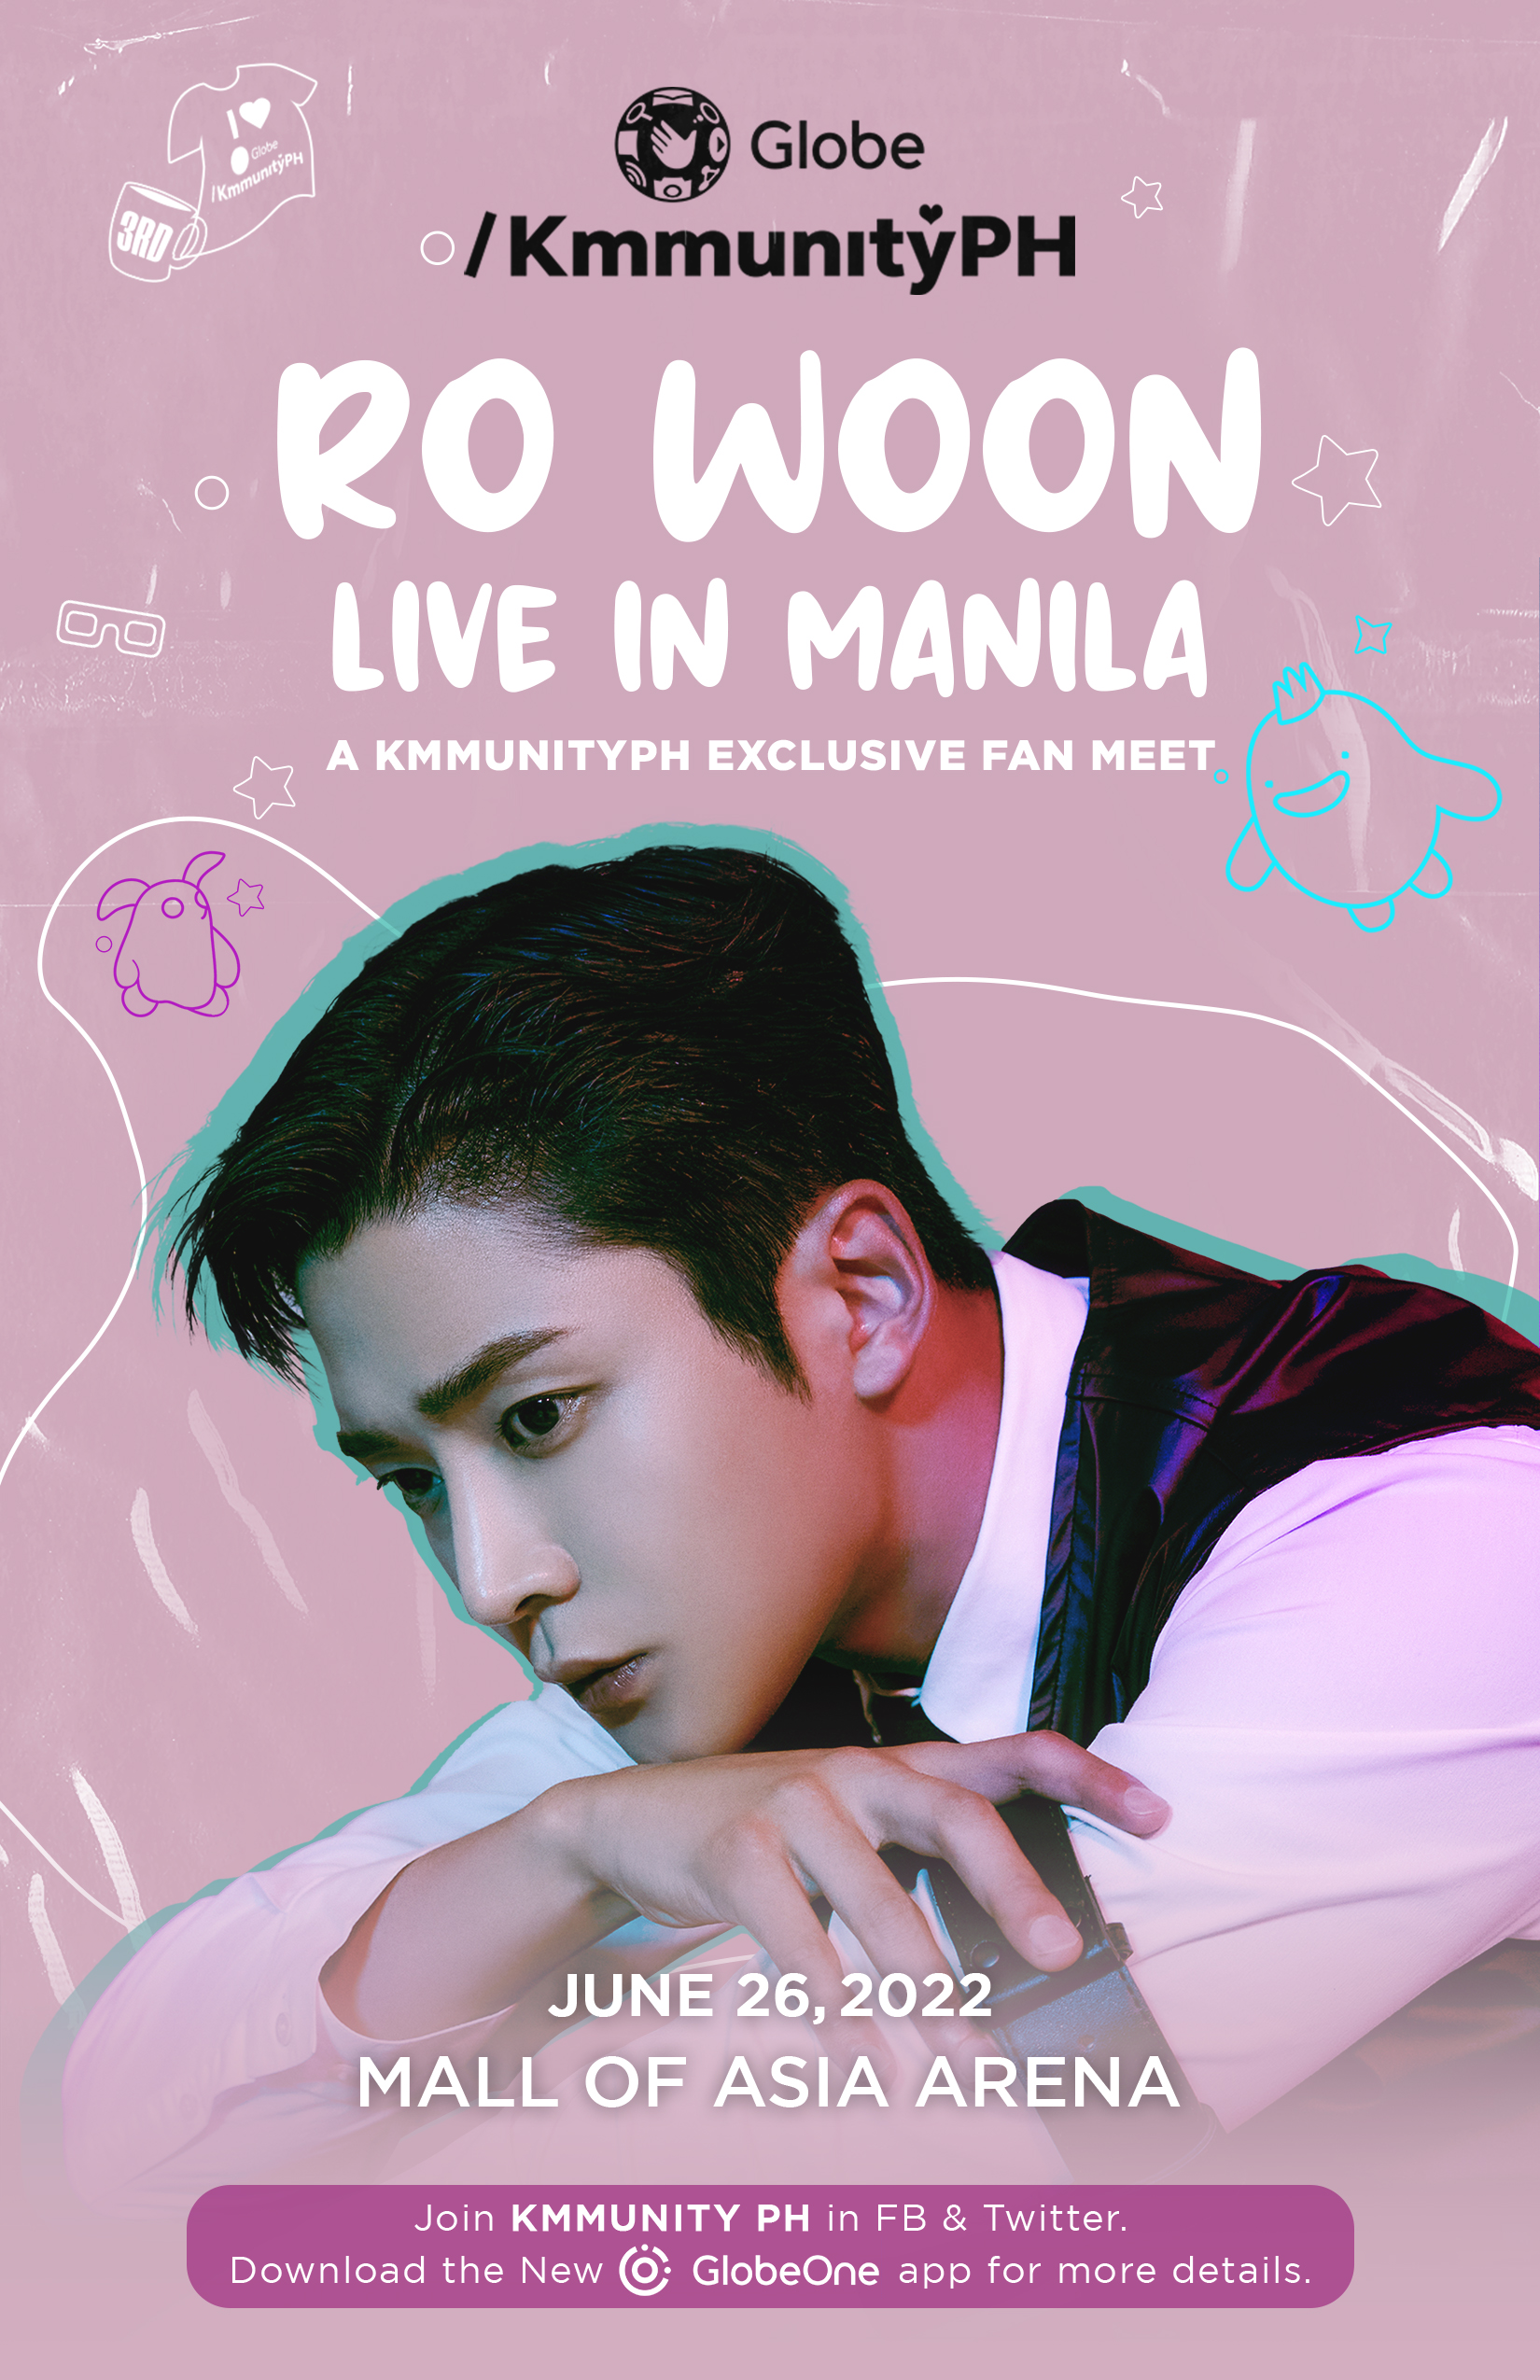 Globe brings RO WOON Live in Manila, An Exclusive KmmunityPh Fan Meet on June 26, 2022